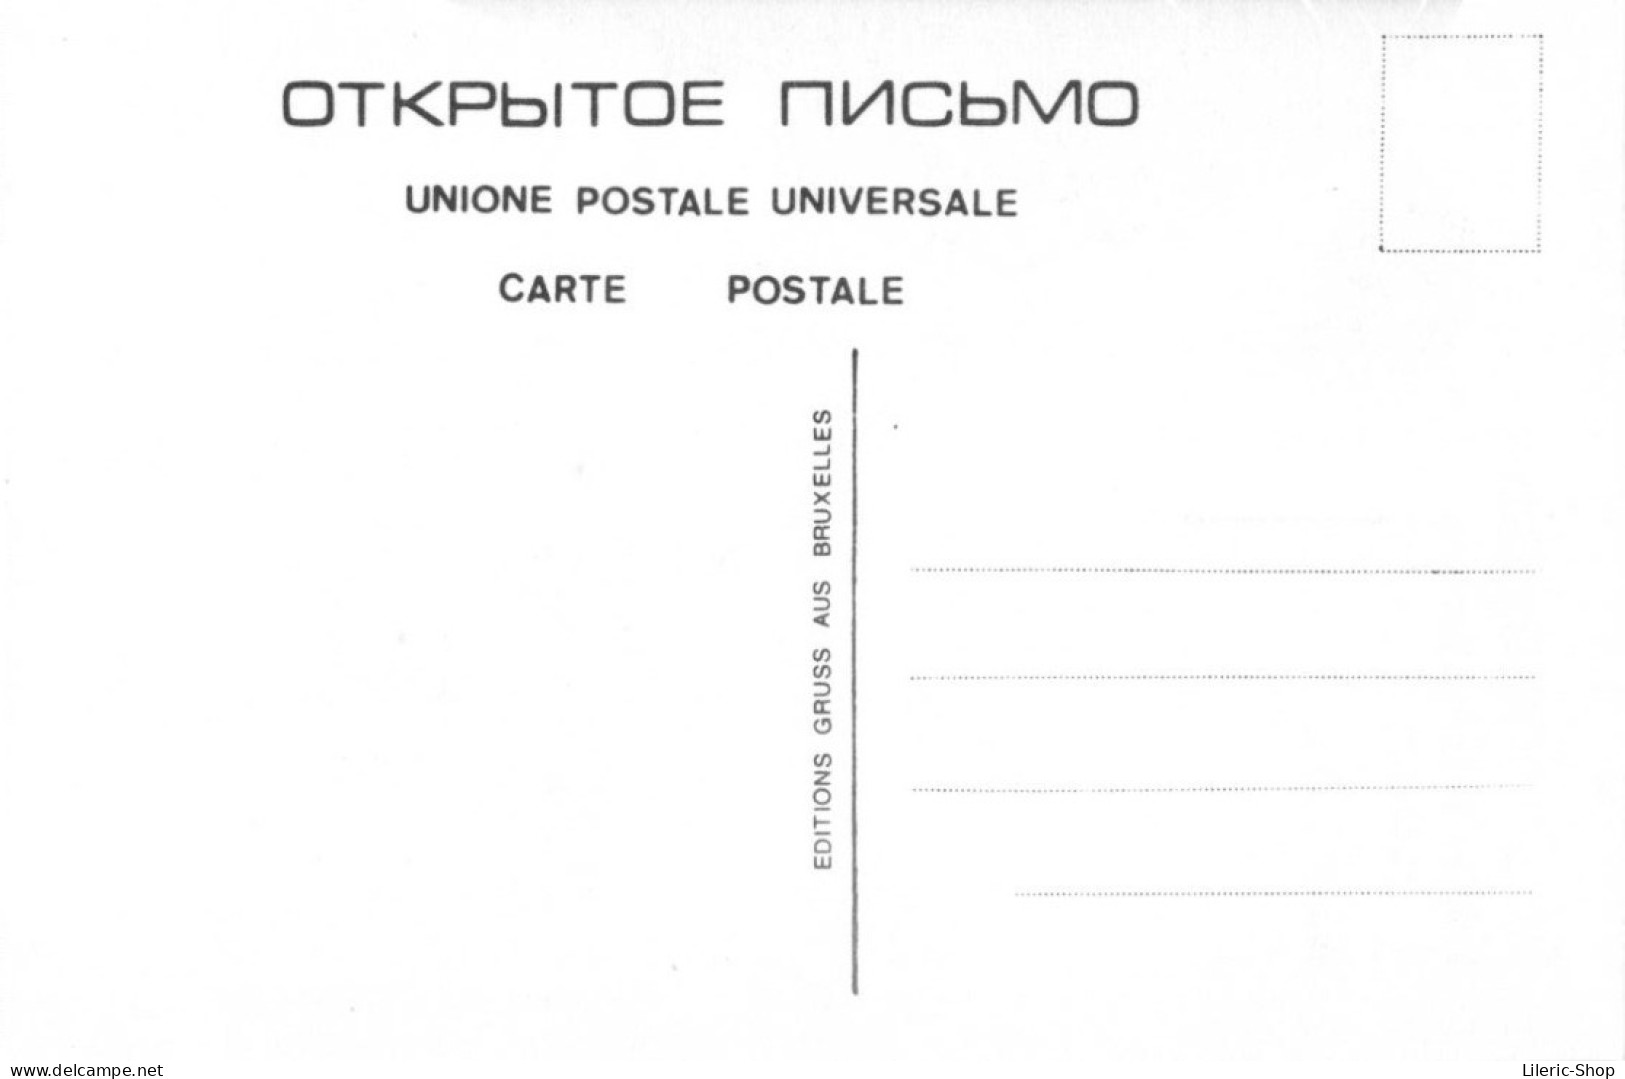 4 CPM  Reproductions d'affiches politiques soviétiques Tirage 500 exemplaires - Pochette papier - Ed Gruss aus Bruxelles